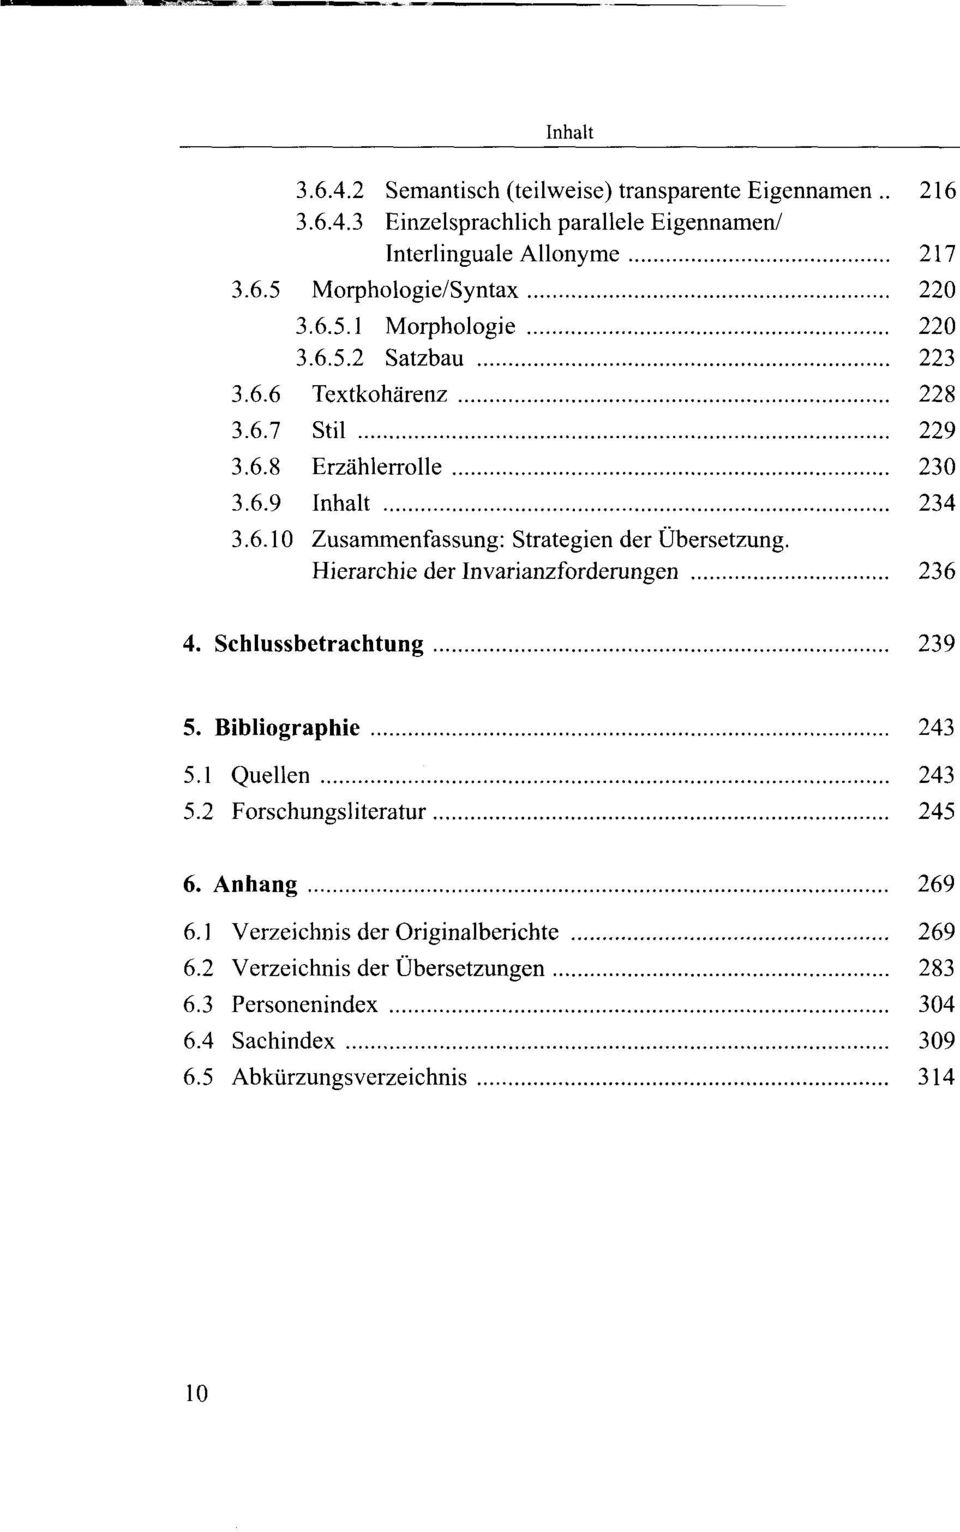 Hierarchie der Invarianzforderungen 236 4. Schlussbetrachtung 239 5. Bibliographie 243 5.1 Quellen 243 5.2 Forschungsliteratur 245 6. Anhang 269 6.